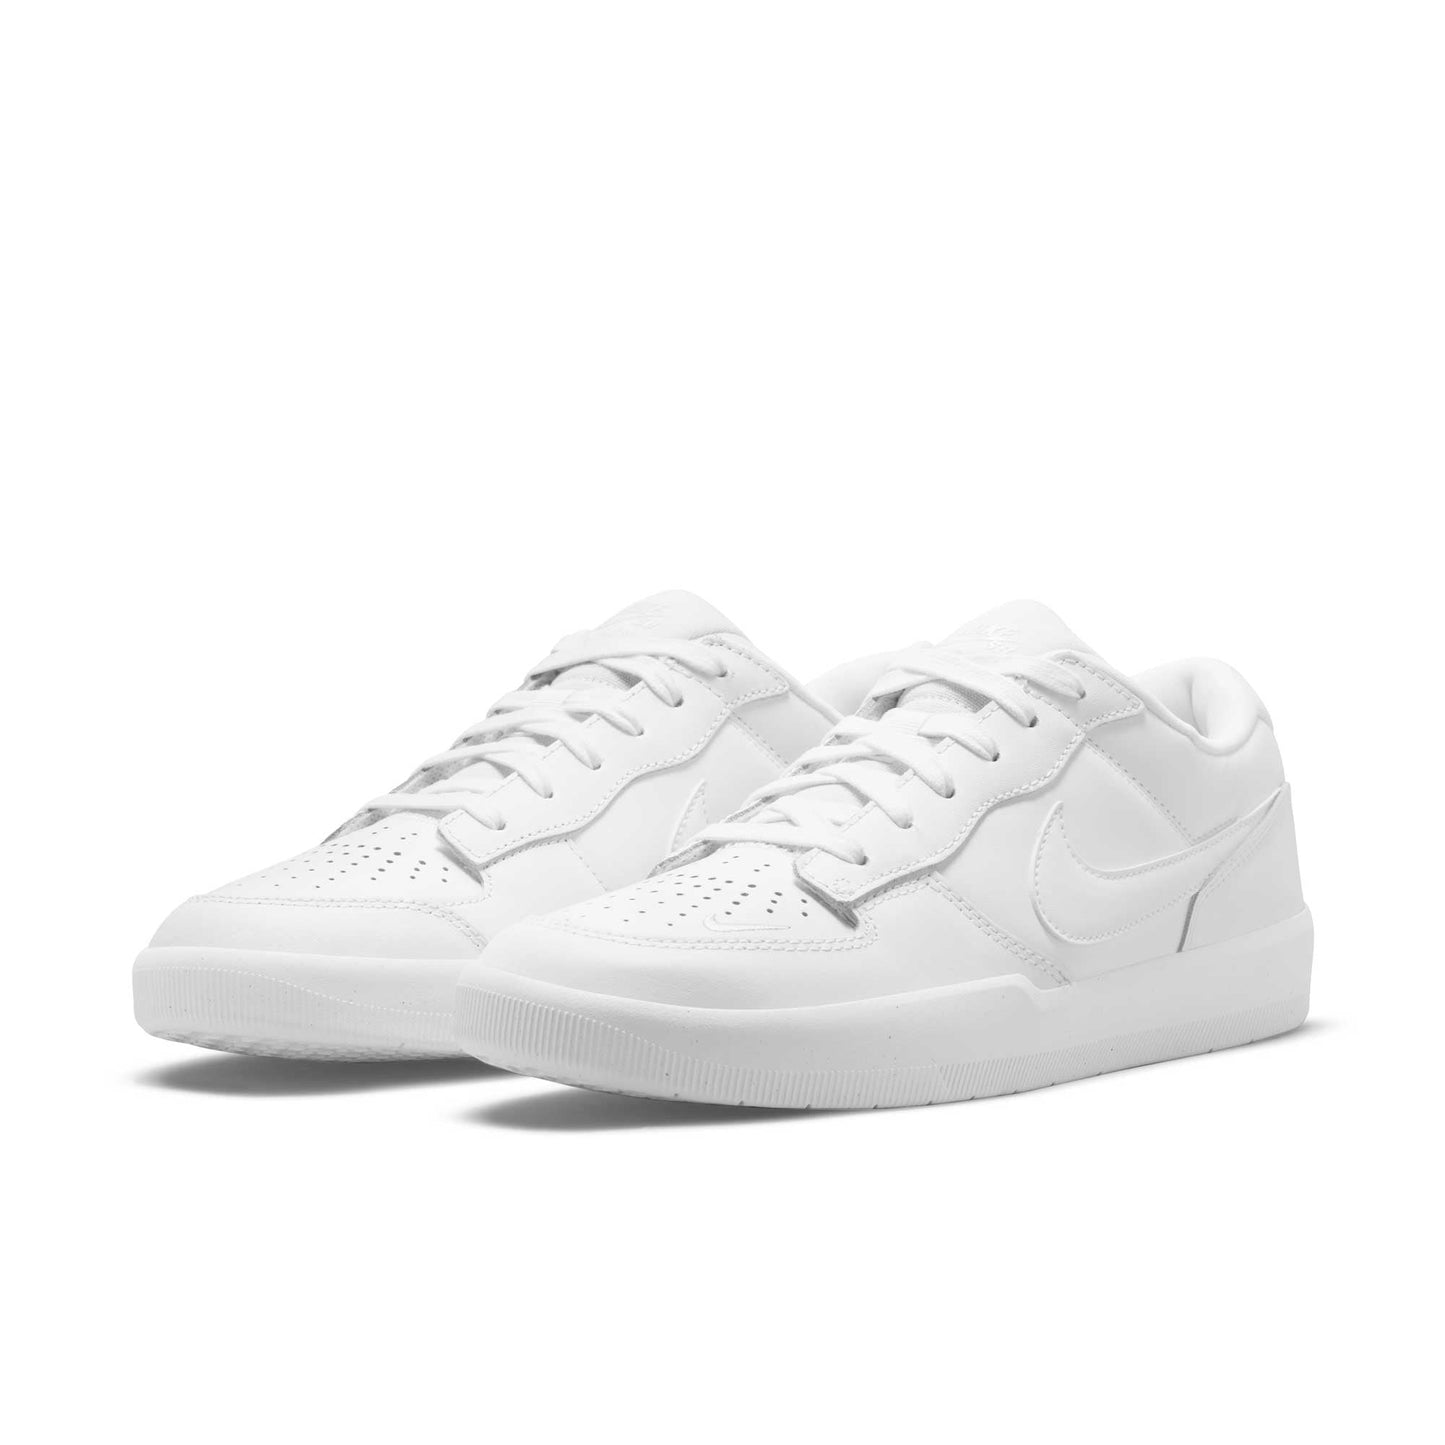 Nike SB Force 58 Premium, white/white-white-white - Tiki Room Skateboards - 2